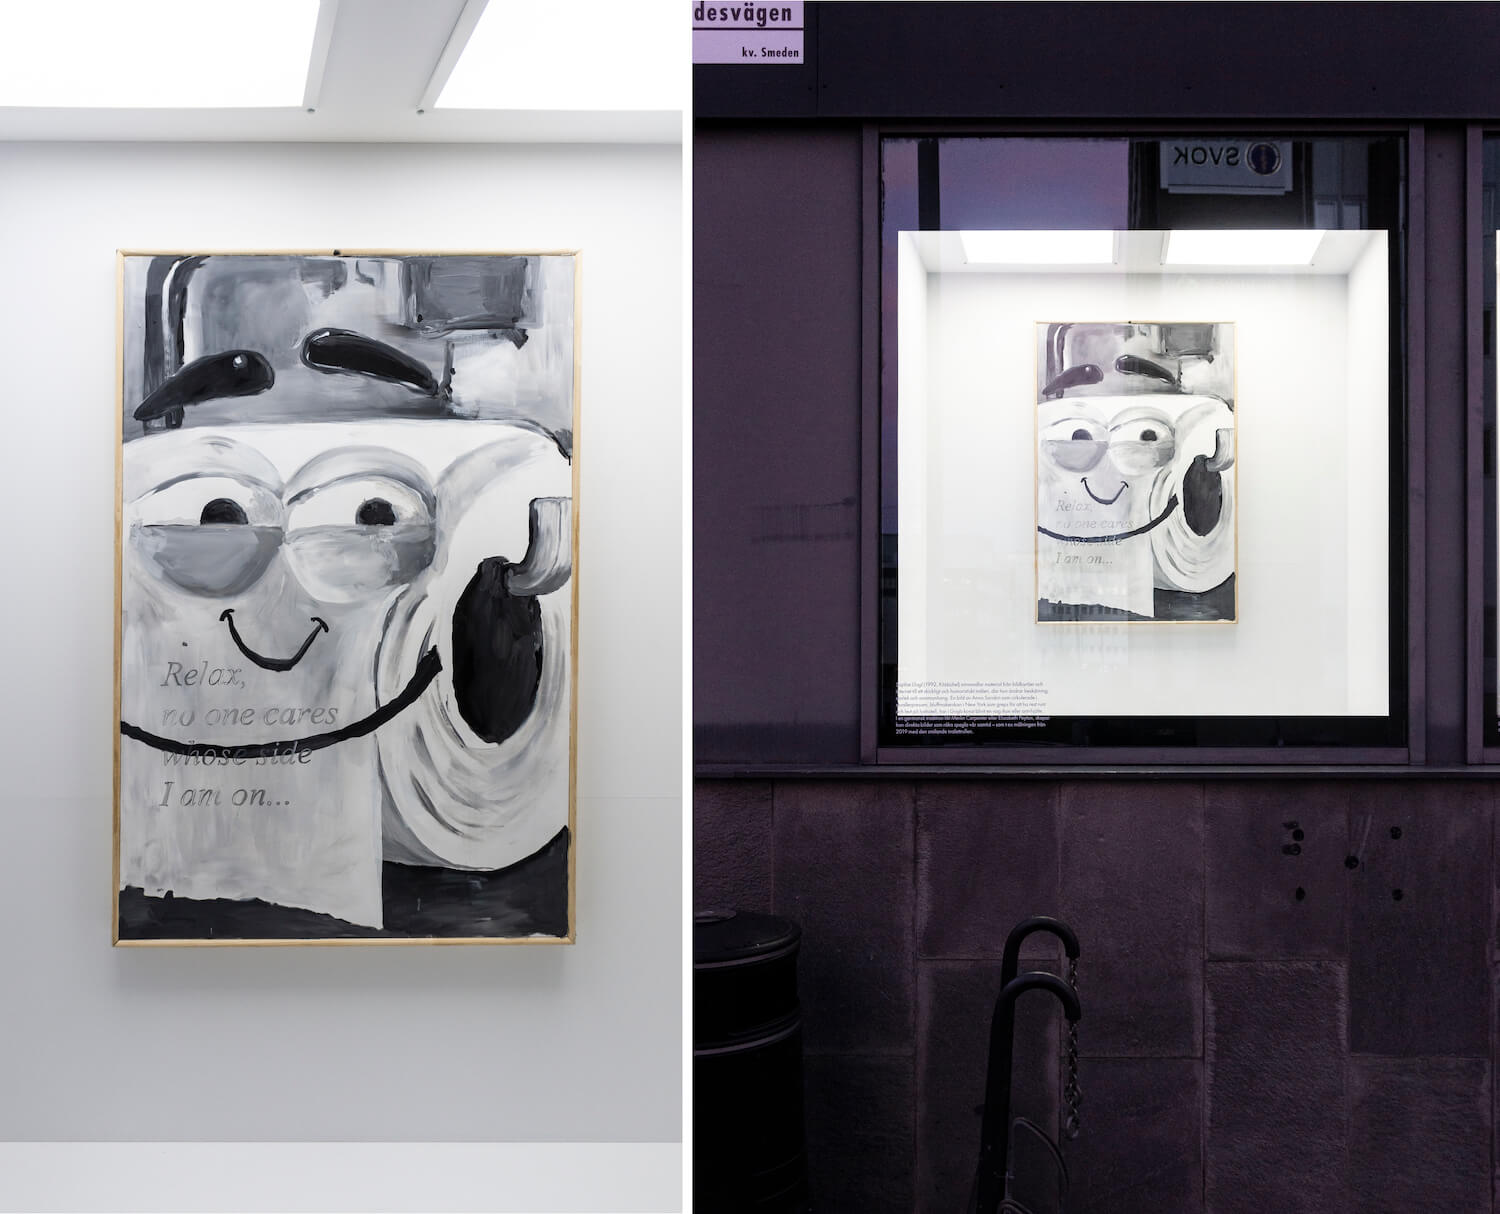 Die Arbeit "Ethical Consumption" von Sophie Gogl zeigt eine grinsende Klorolle. Links: die Arbeit, rechts: die Arbeit installatiert bei Tre Kronor.